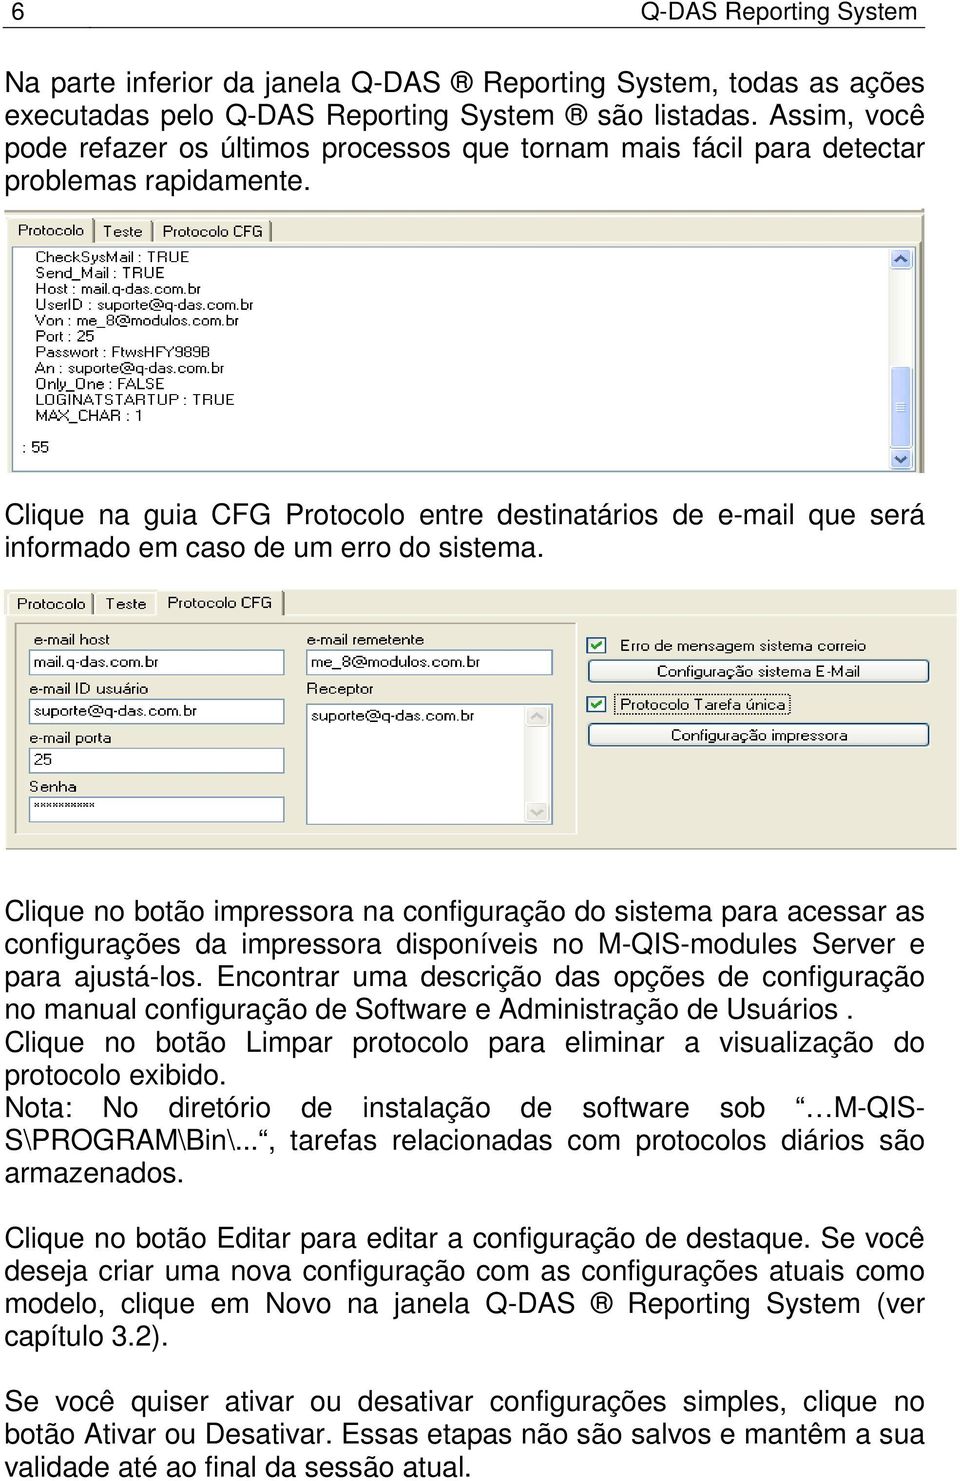 Clique na guia CFG Protocolo entre destinatários de e-mail que será informado em caso de um erro do sistema.